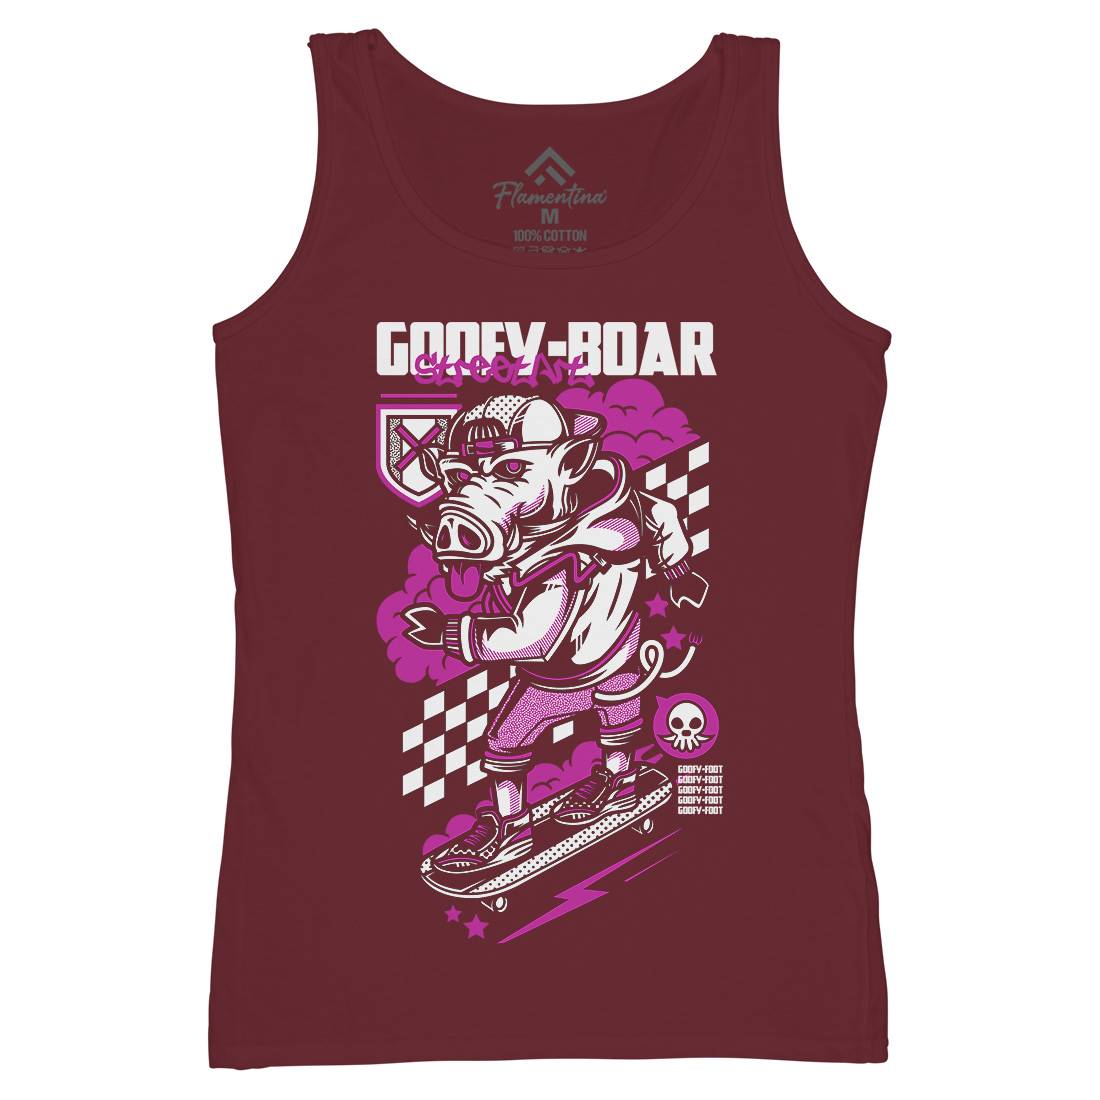 Goofy Boar Womens Organic Tank Top Vest Skate D797